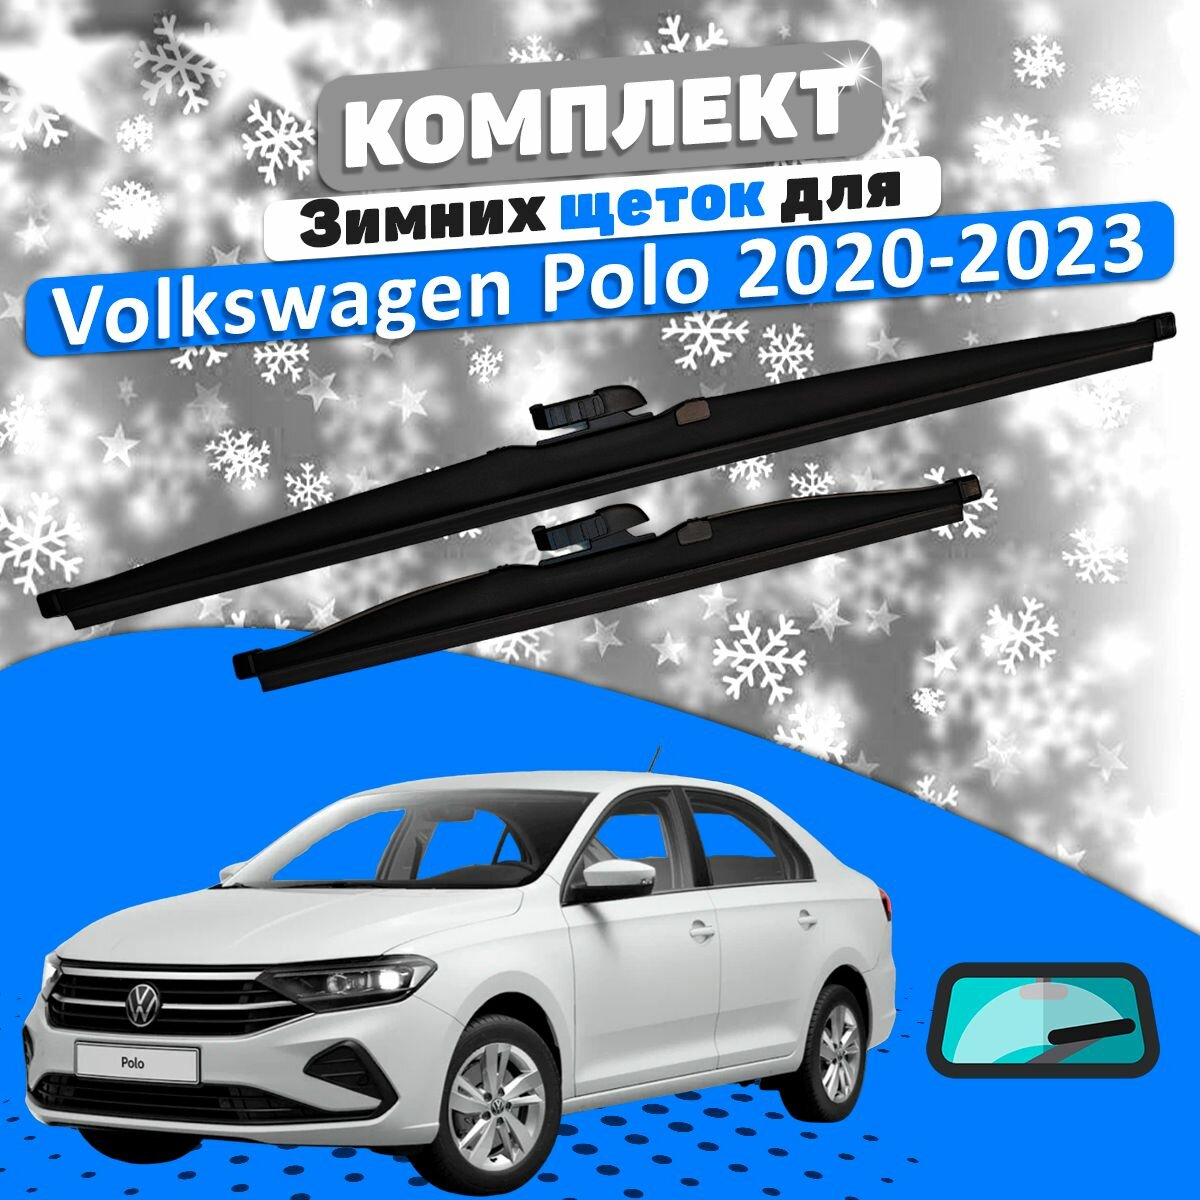 Комплект зимних щеток стеклоочистителя для Volkswagen Polo Liftback 2020-2023 (600 и 400 мм) / Дворники Фольксваген Поло Лифтбэк